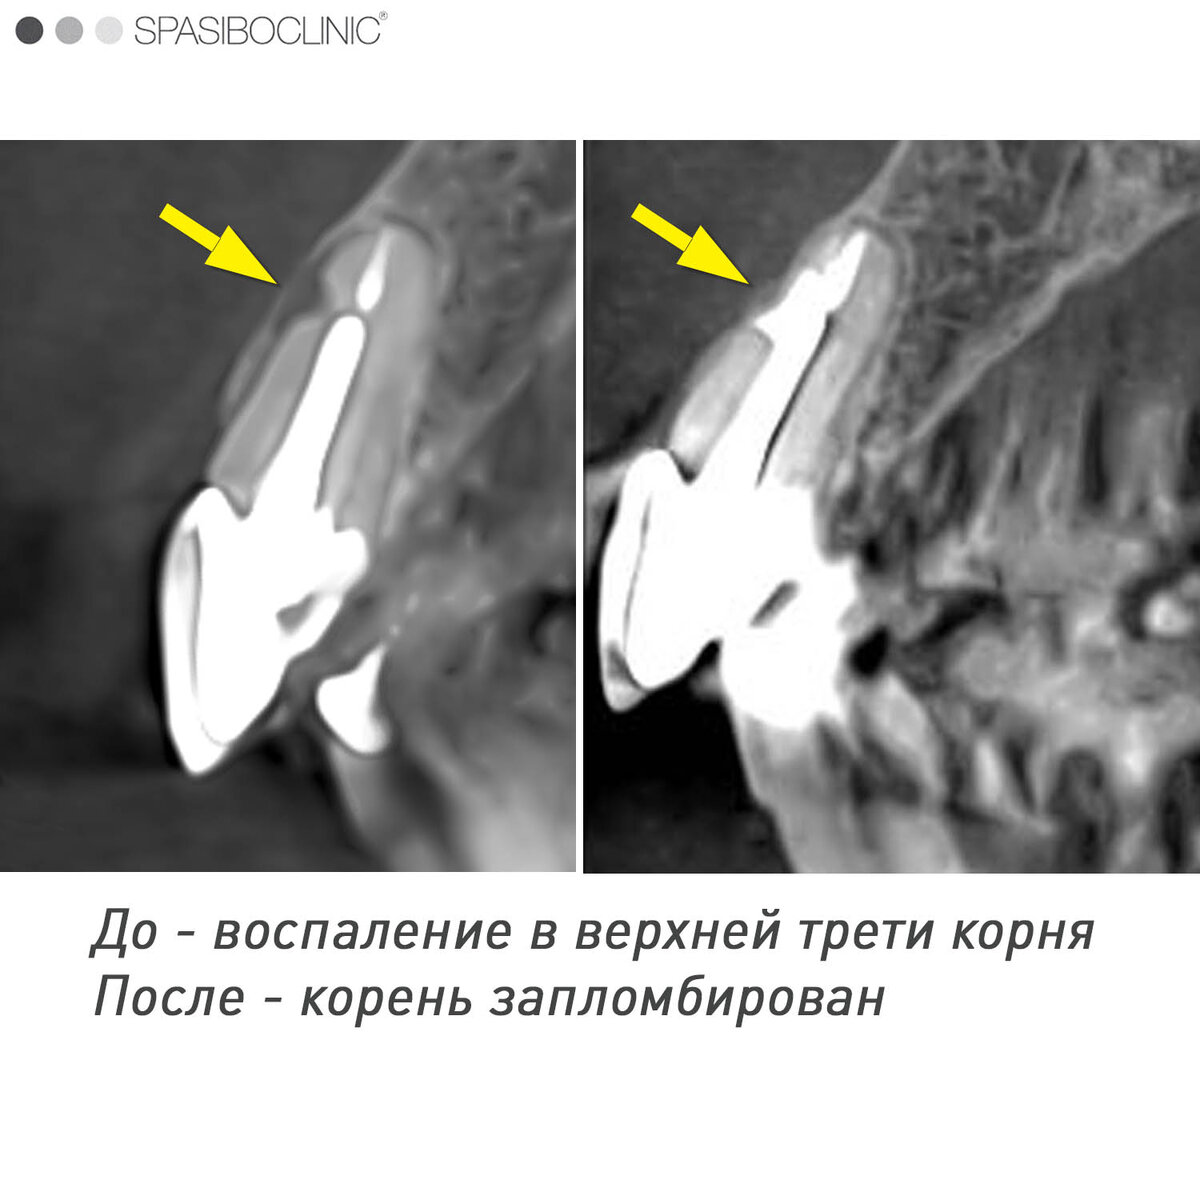 При воспалении зуба уходит кость. Как выглядит на снимке плохо запломбированный зуб.